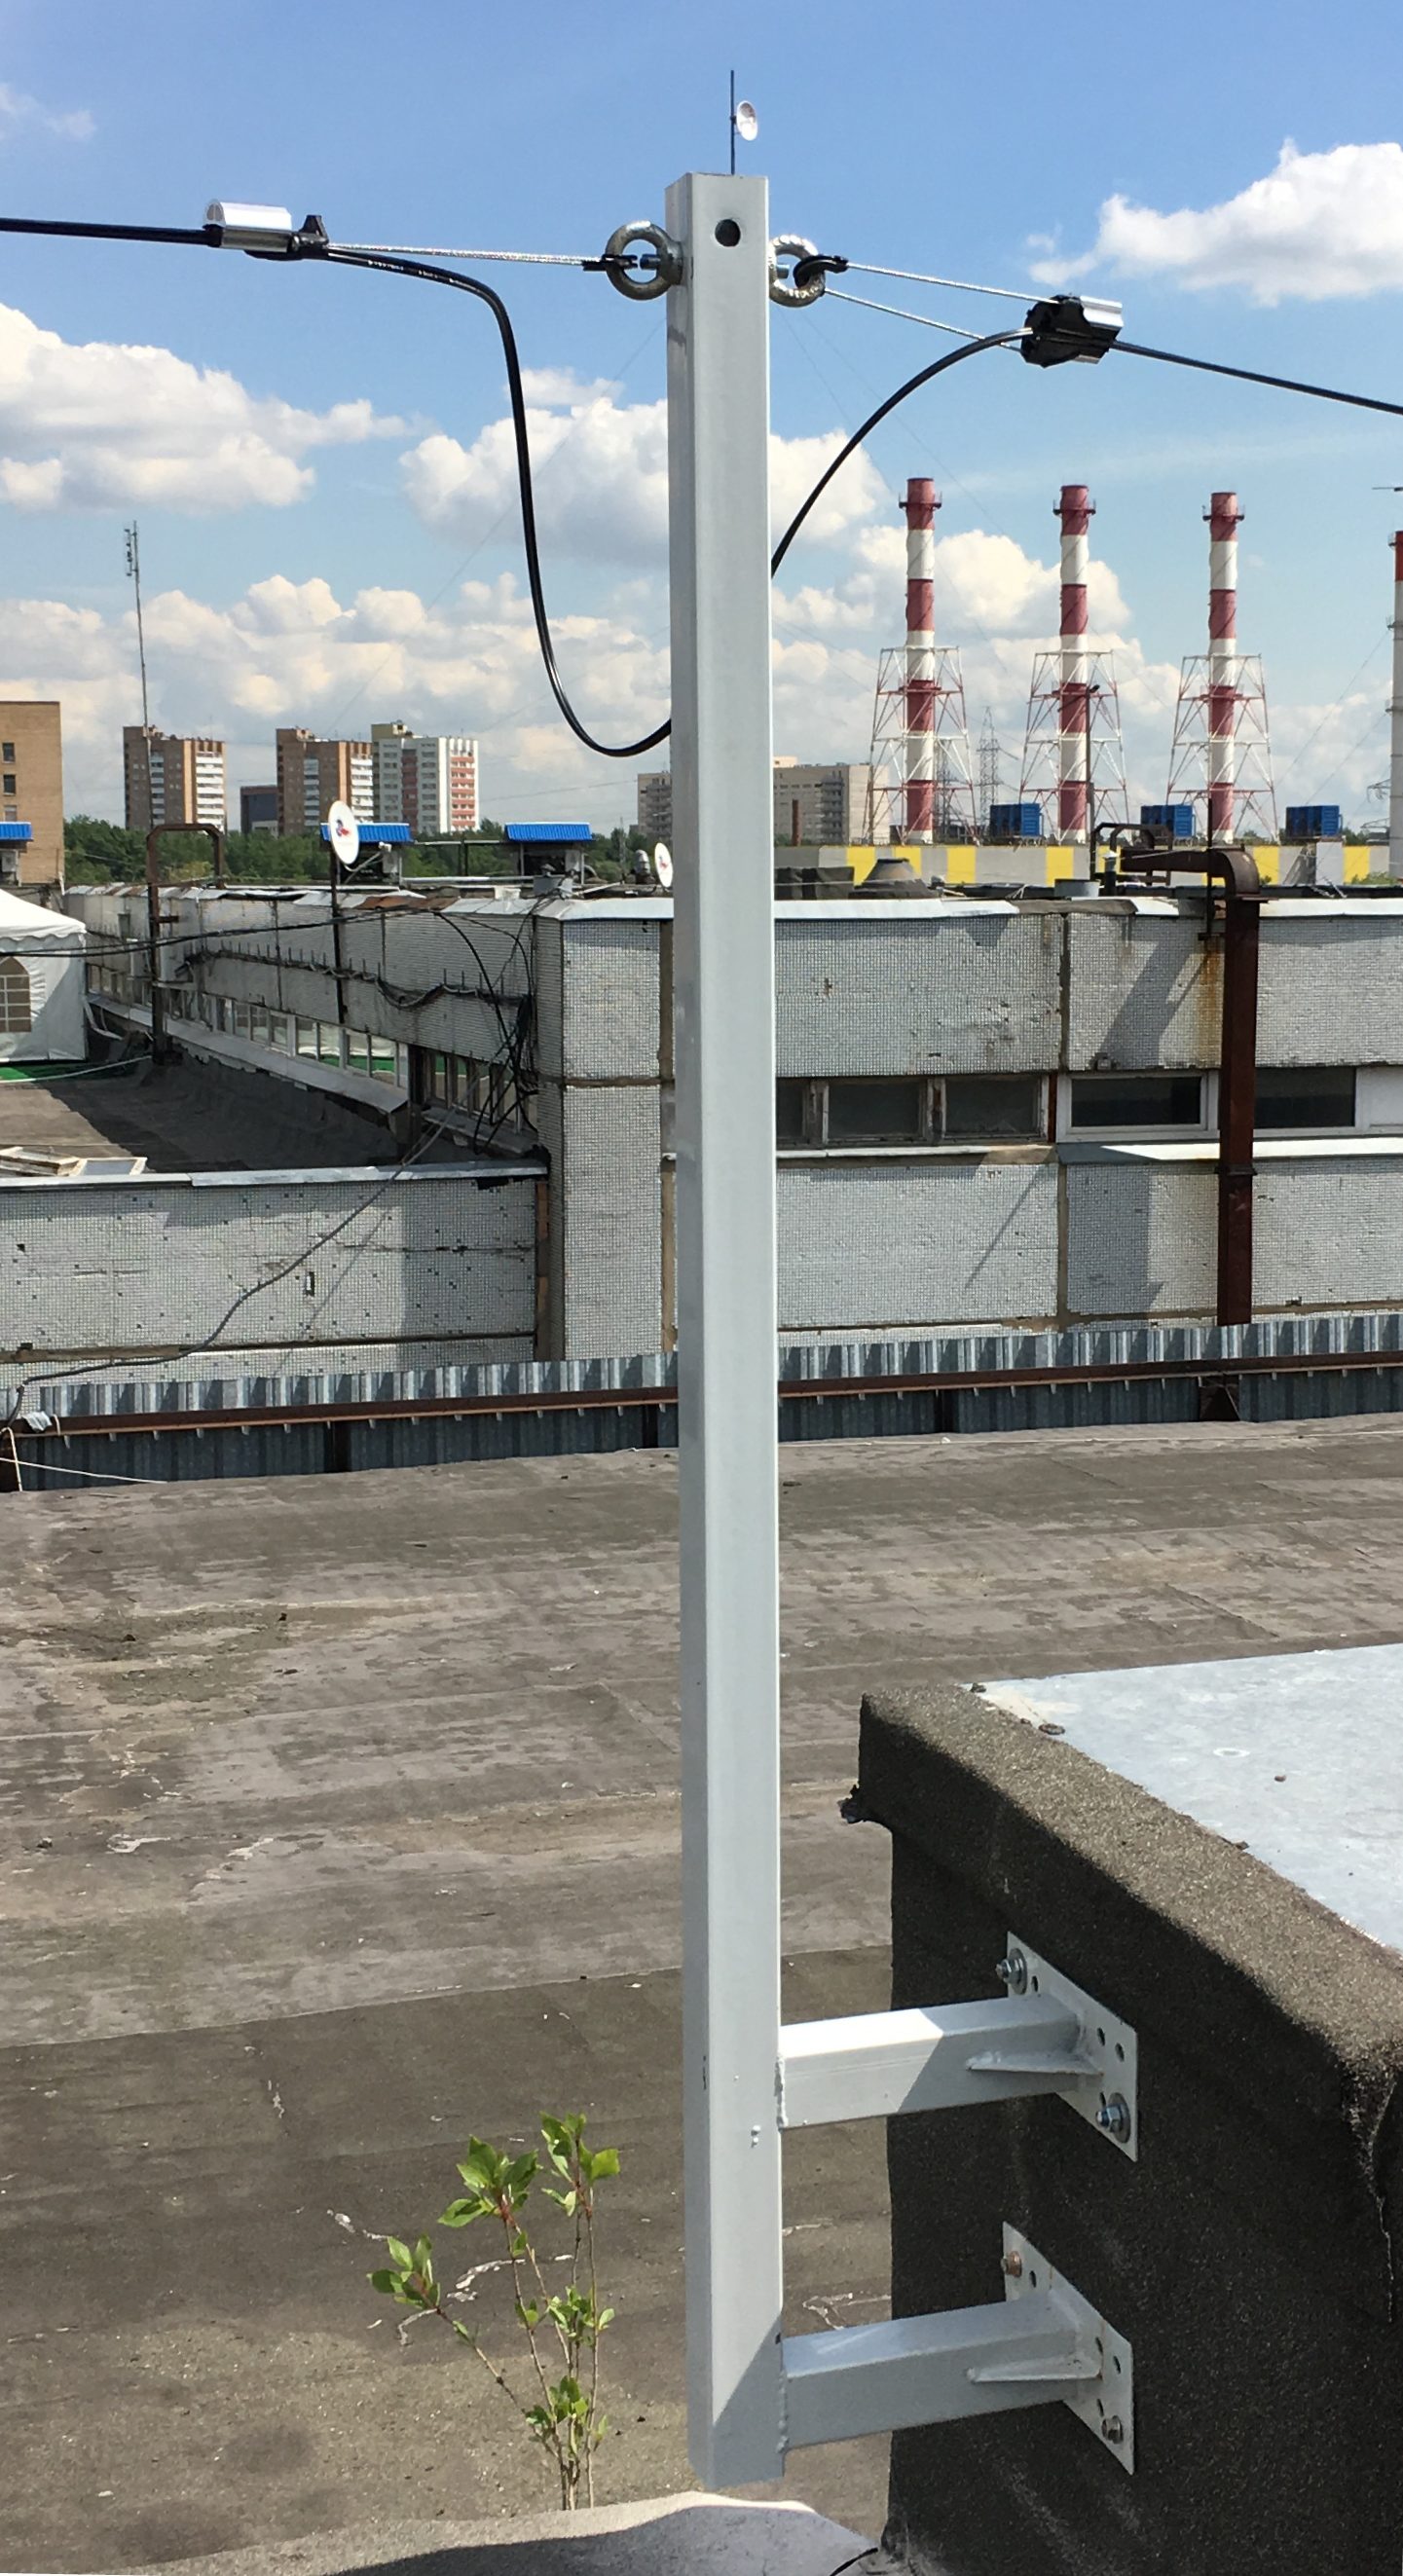 Монтаж воздушной ВОЛС, подвеска кабеля по крышам зданий